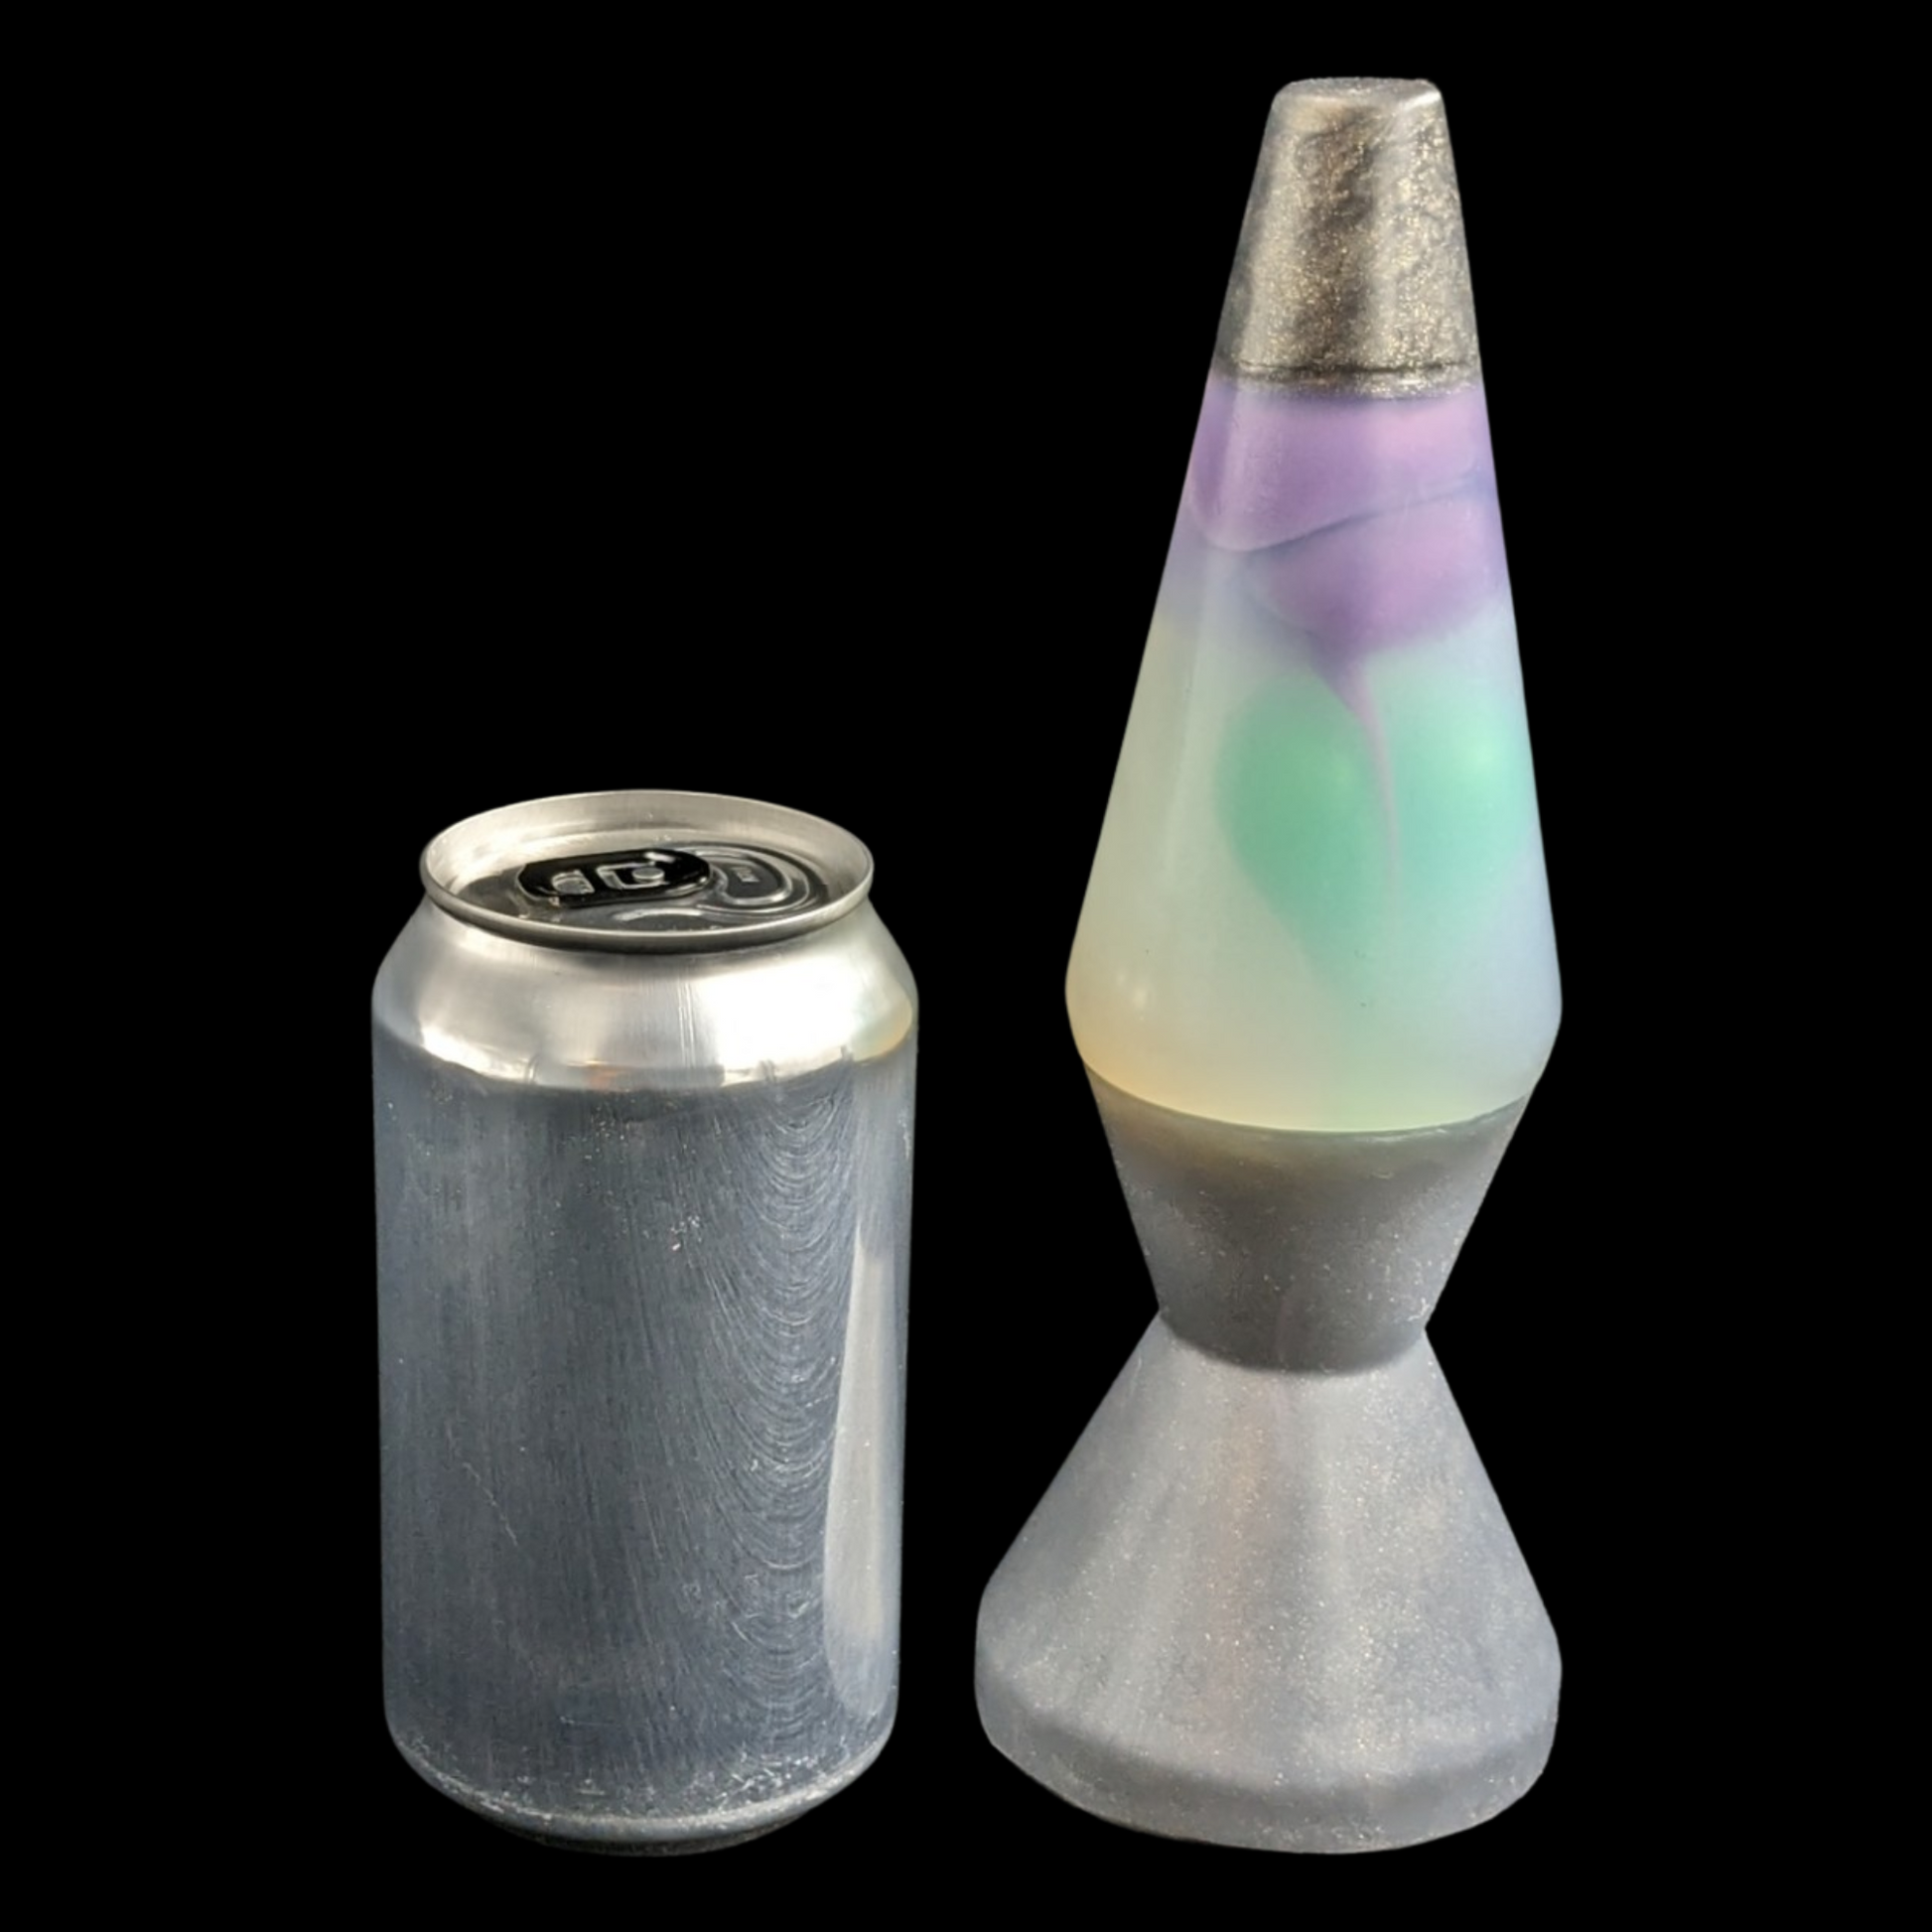 Lava lamp silicone butt plug dildo size comparison